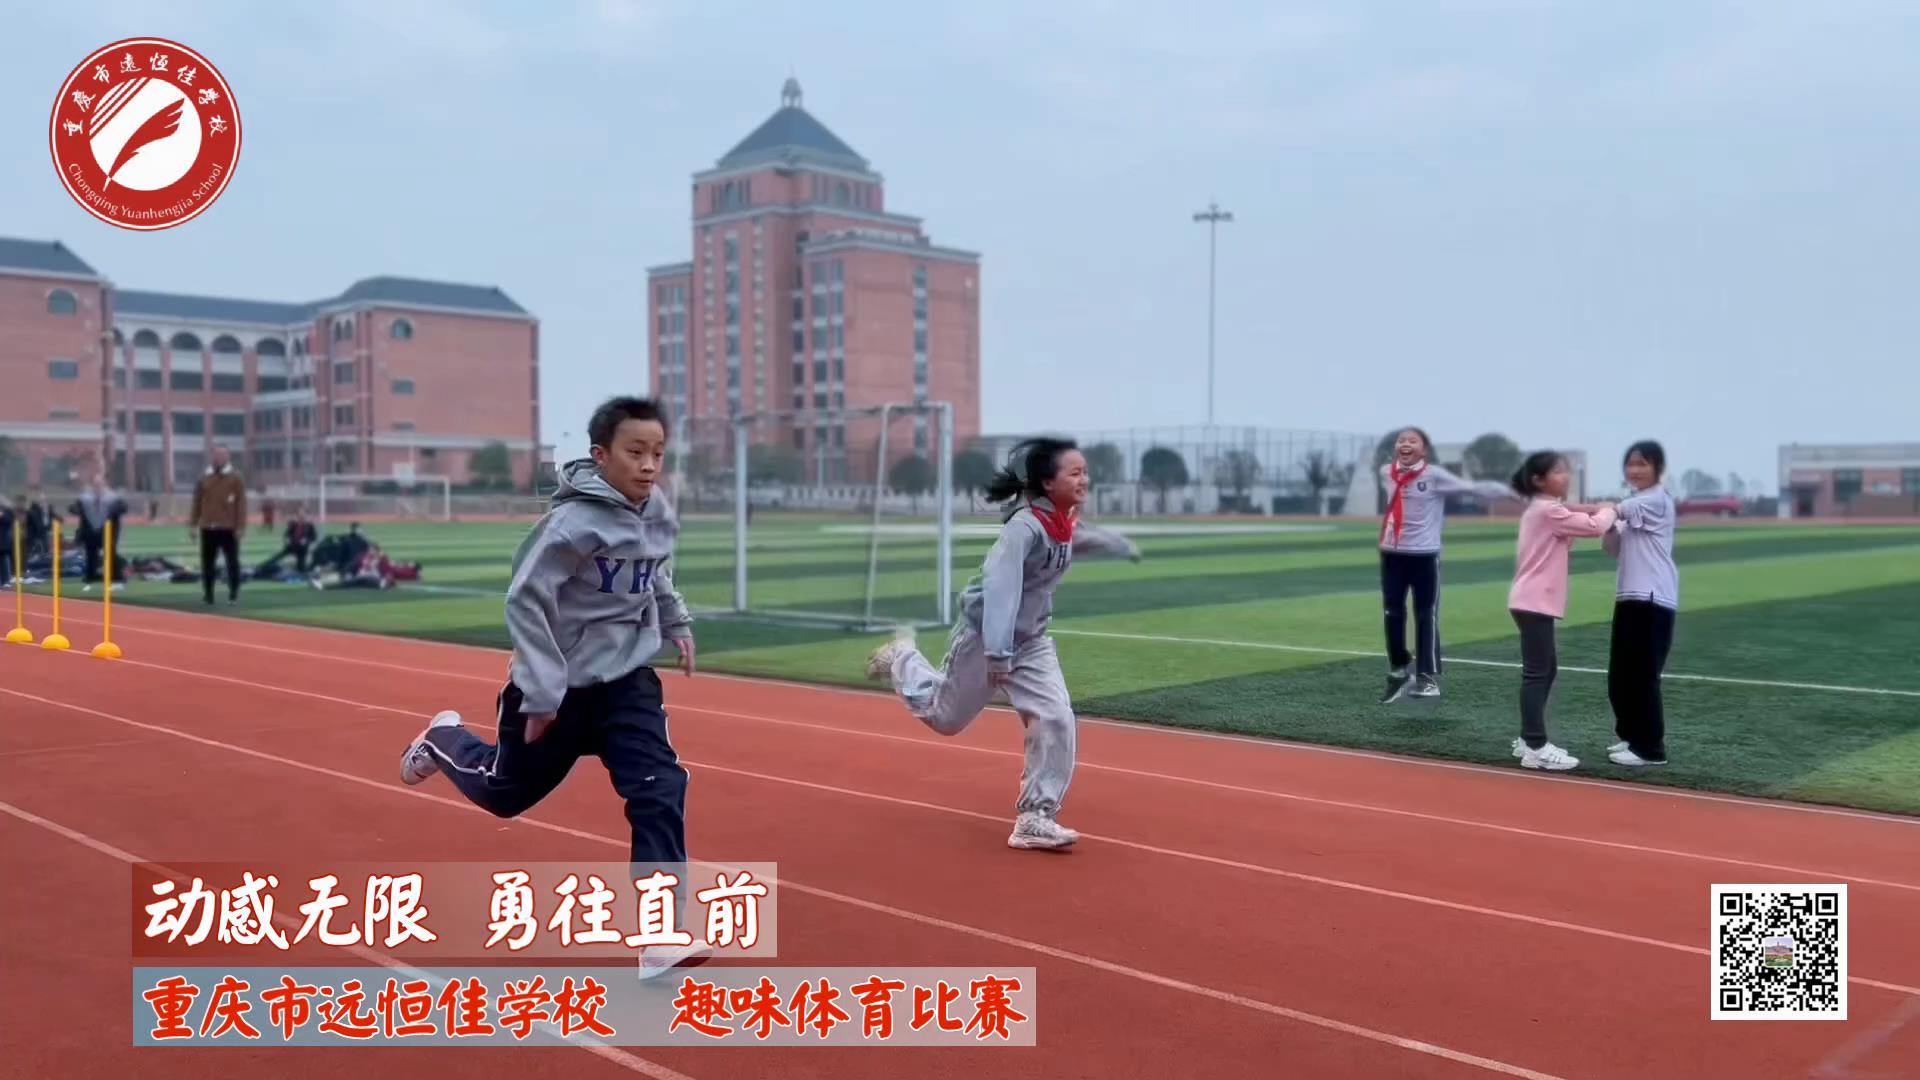 动感无限 勇往直前——重庆市远恒佳学校小学部趣味运动会 #美好学校